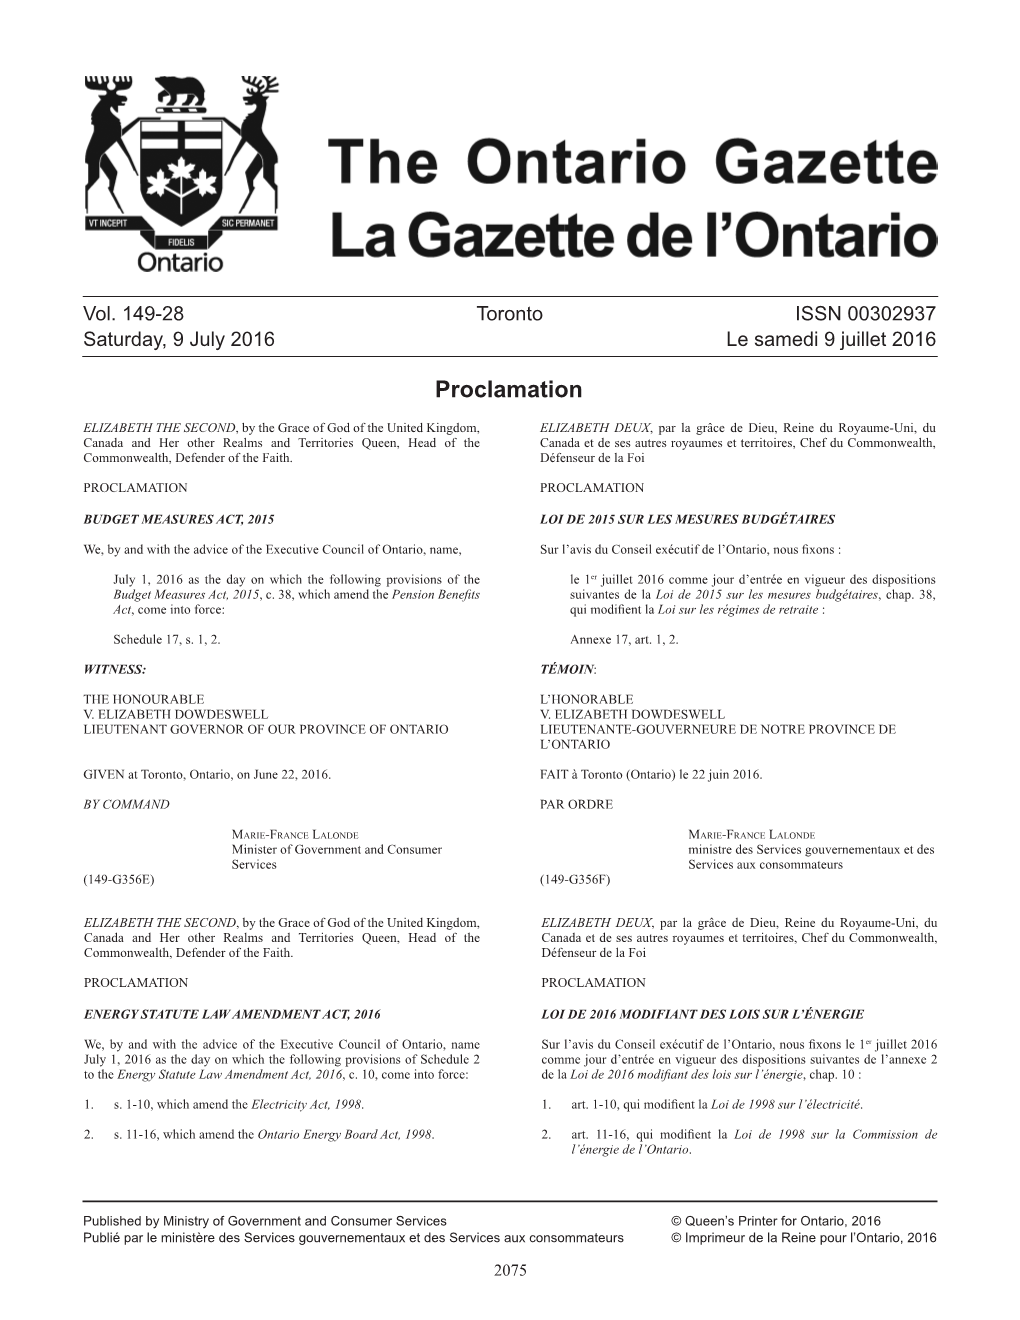 Ontario Gazette Volume 149 Issue 28, La Gazette De L'ontario Volume 149